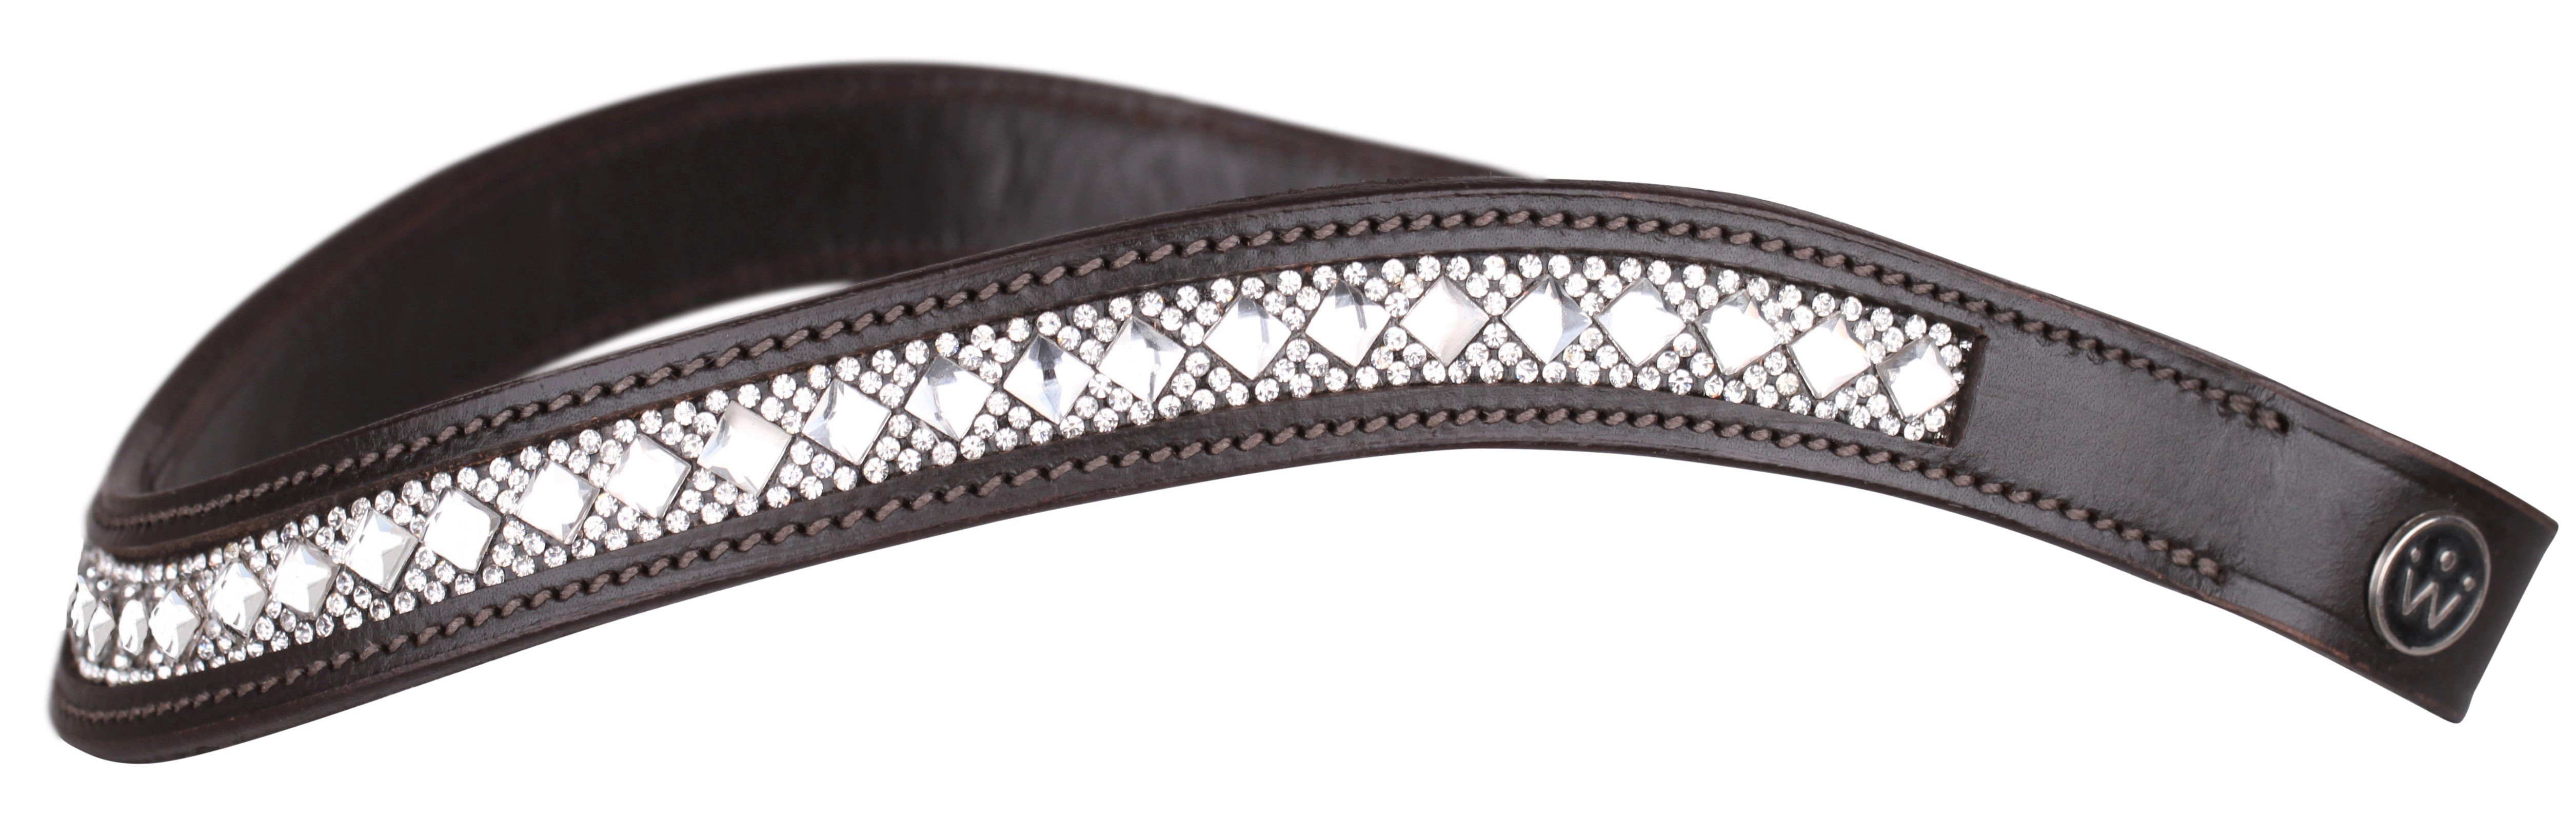 langsom ganske enkelt kompas SD Design Azarro Pandebånd i brunt læder. Køb nu online 399,-